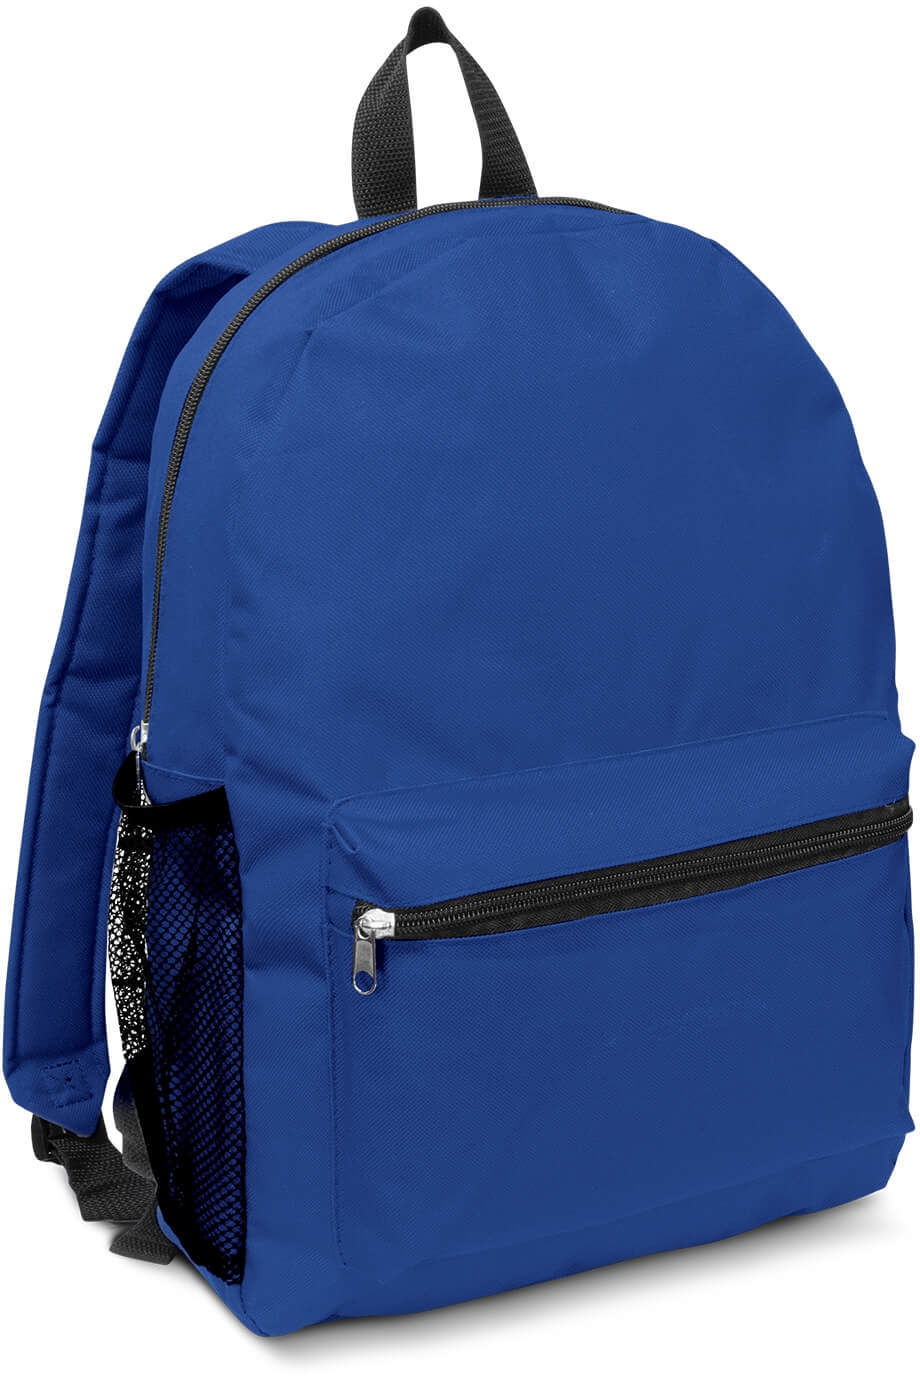 Royal Blue Scholar Backpack